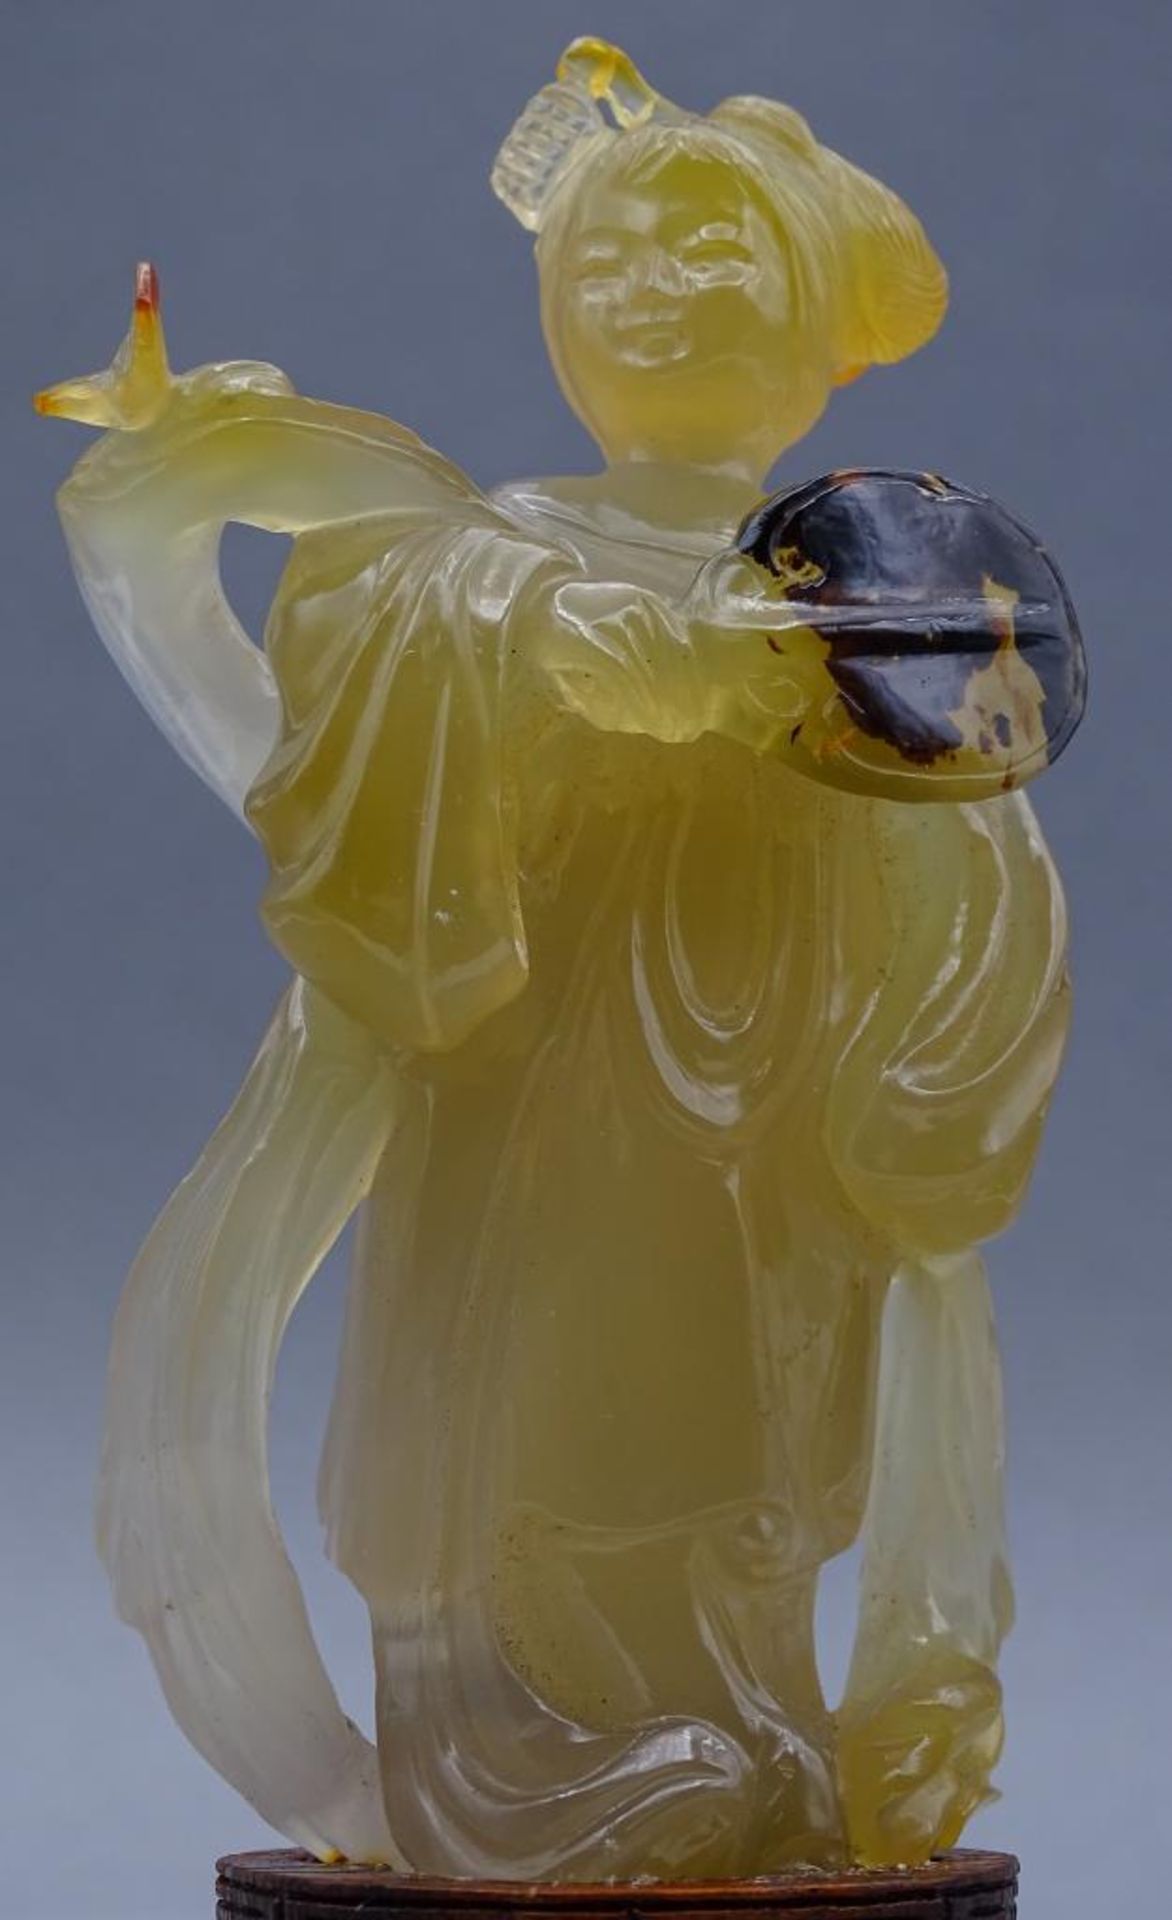 gelbe Jadeschnitzerei, Chinesin mit Fächer auf Holzsockel, China, 18/19. Jhd? , H-ca. 14 cm, rechte - Bild 4 aus 7